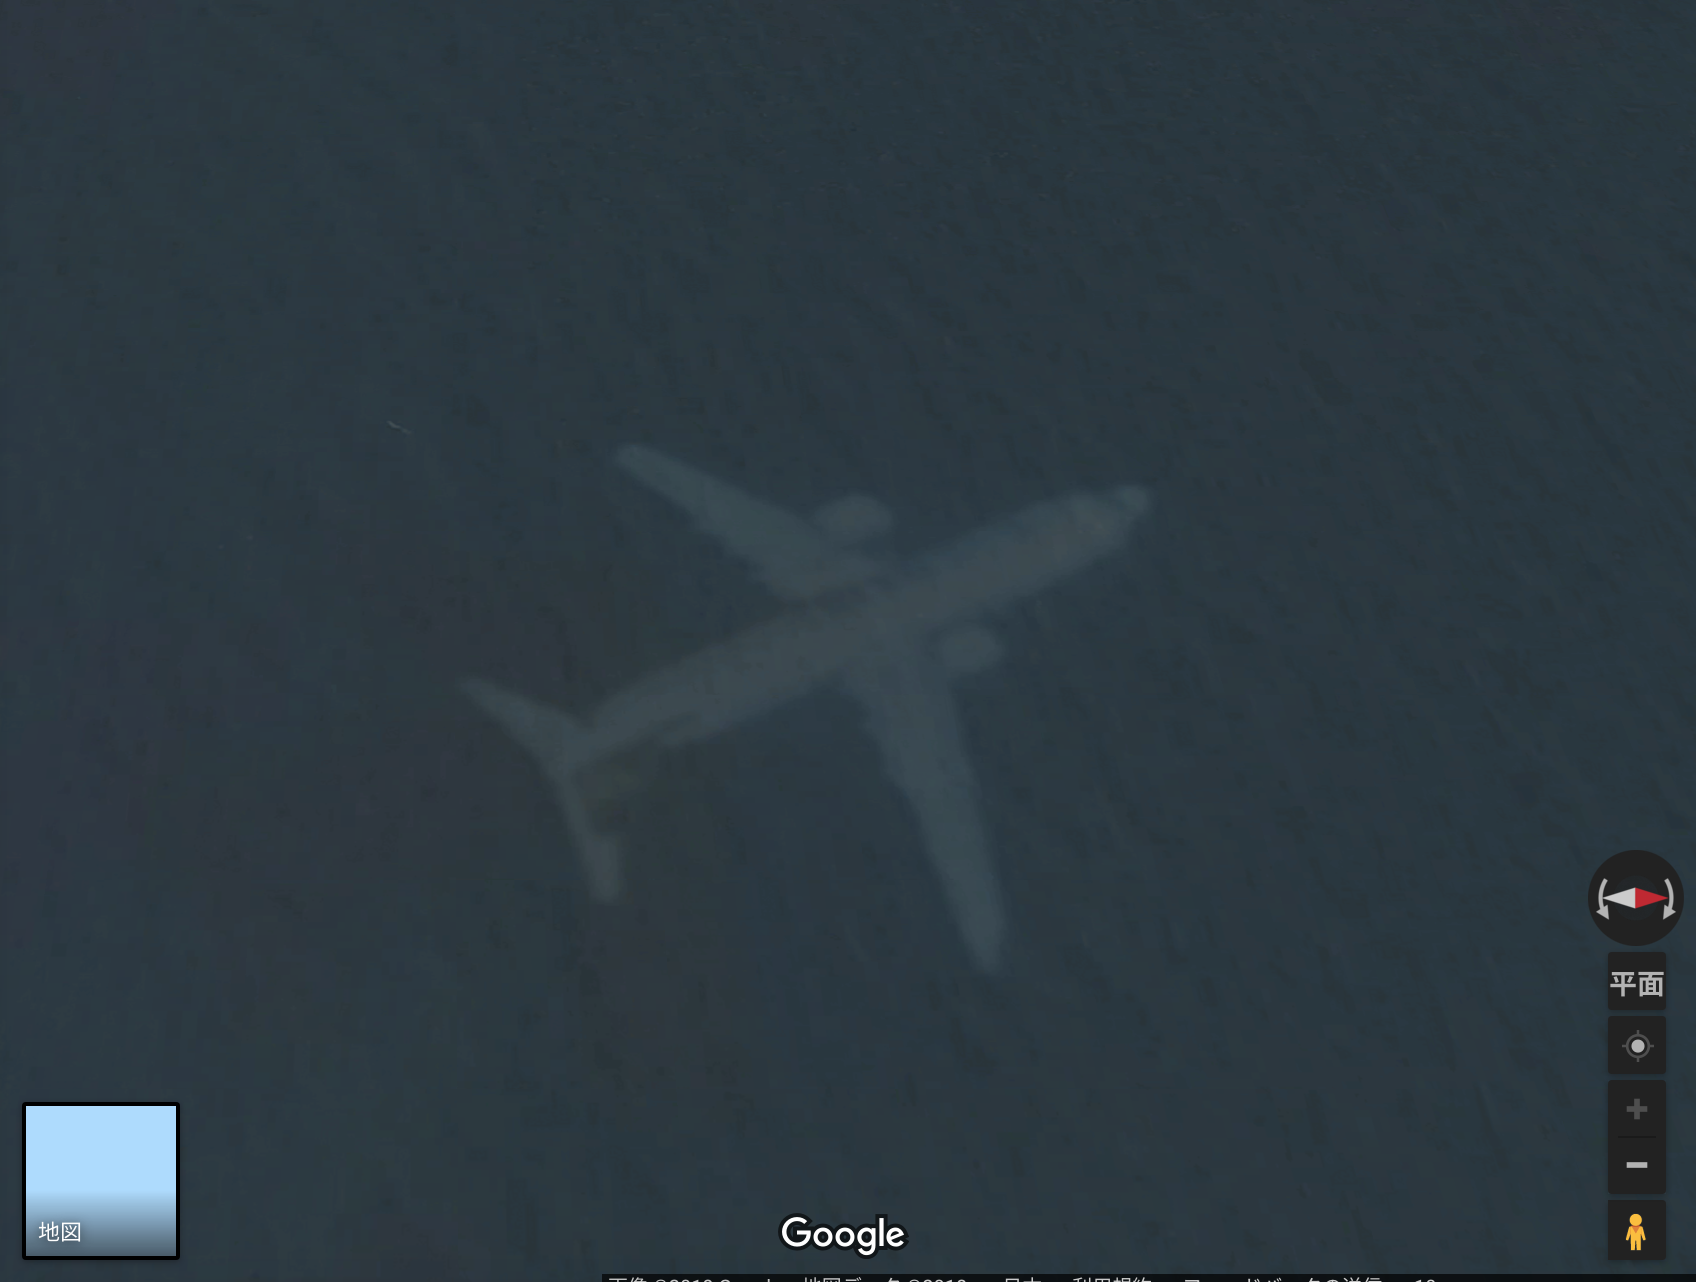 英に戦慄 Googlemapで 失われた機体 が発見される 失踪した飛行機か 秒刊sunday